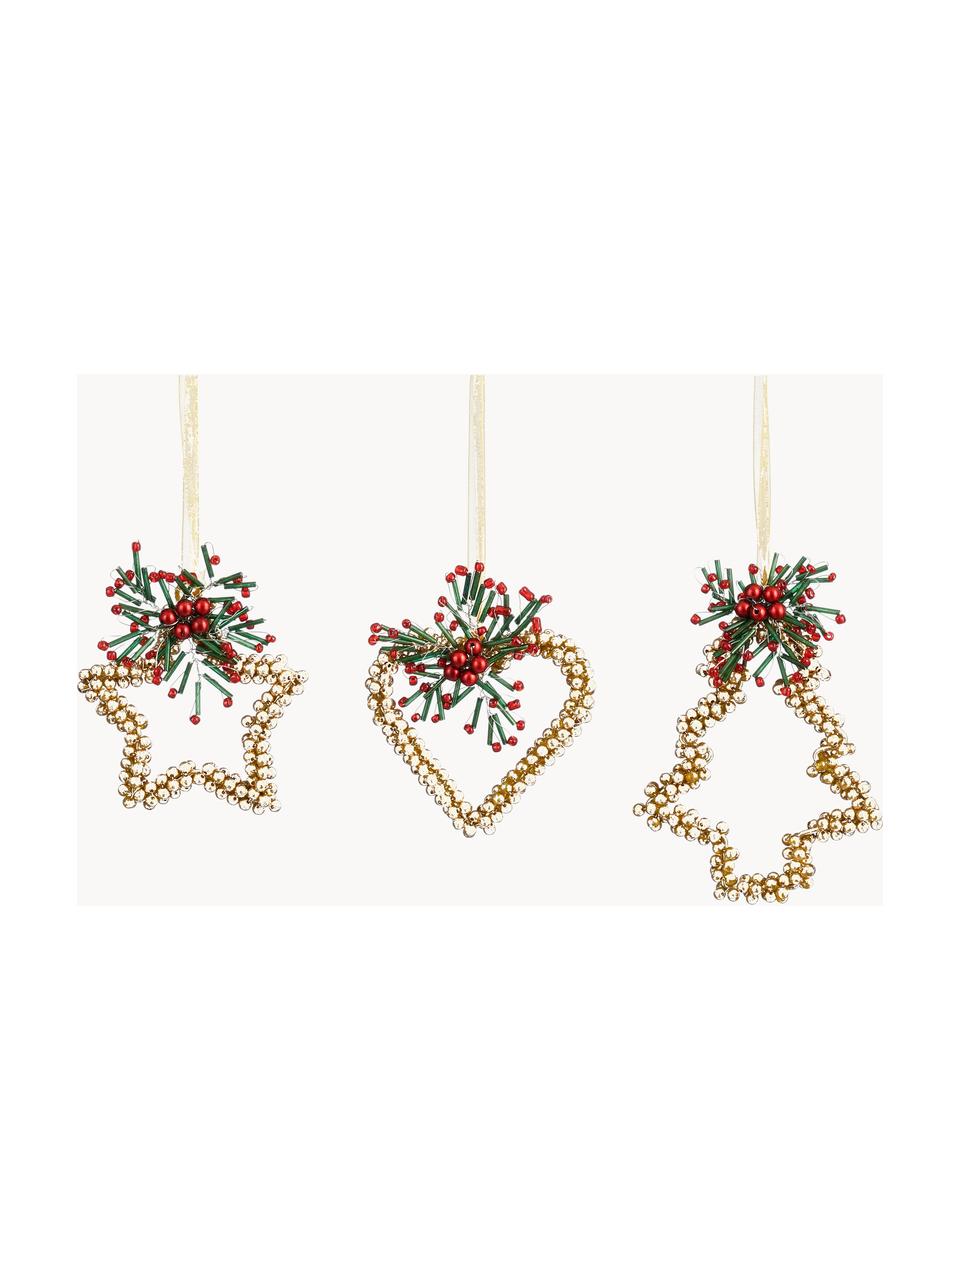 Kerstboomhangers Ornament, set van 6, Goudkleurig, rood, groen, Set met verschillende formaten